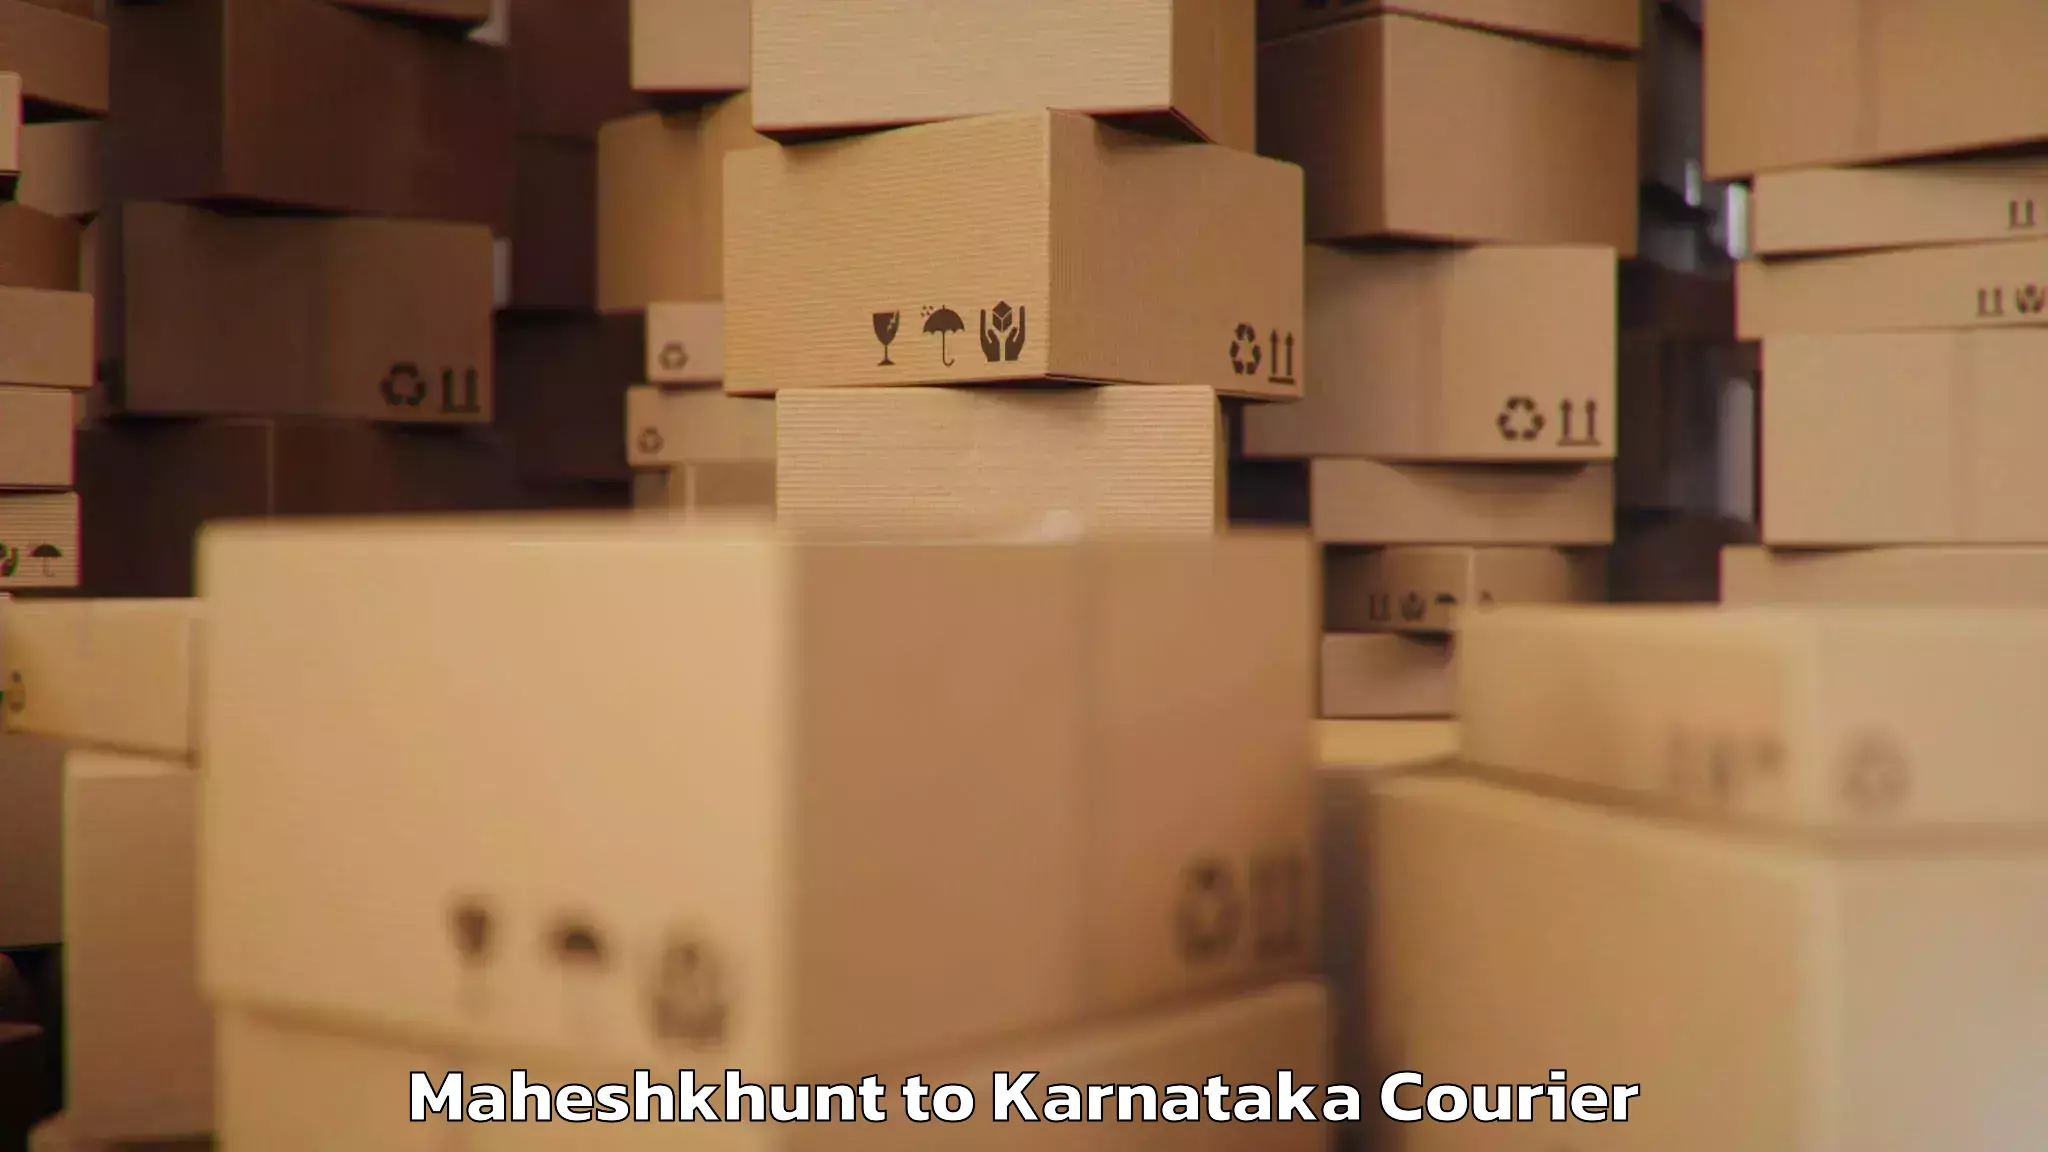 Electronic items luggage shipping Maheshkhunt to Karnataka